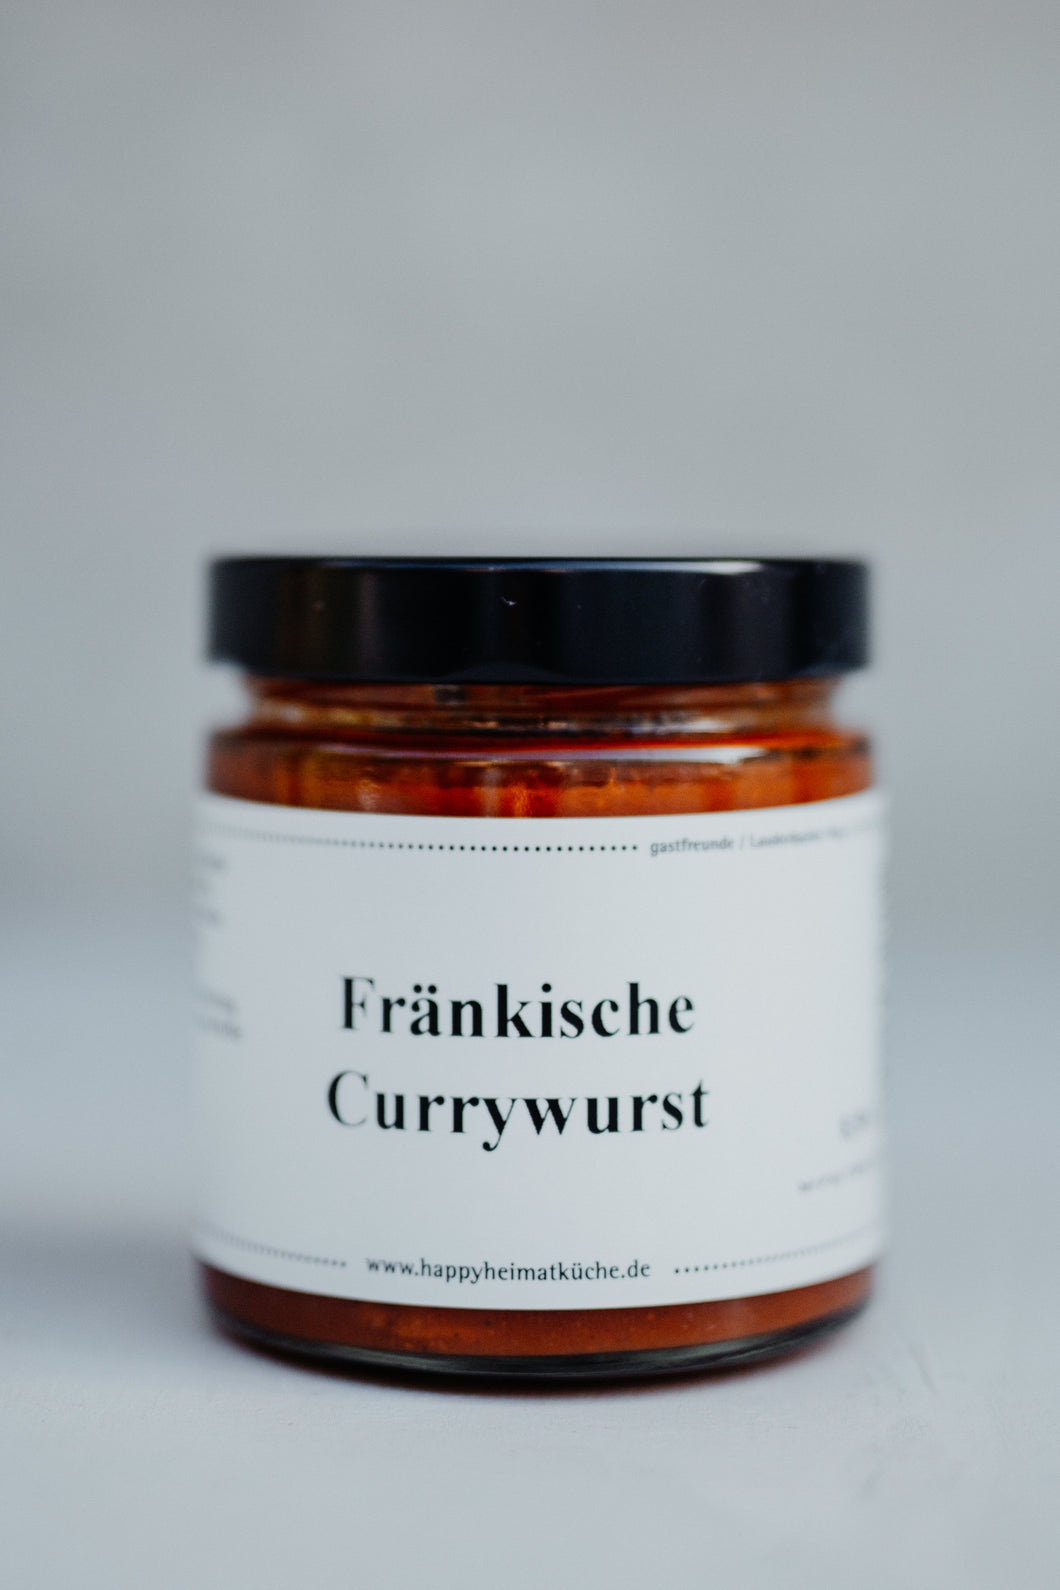 Fränkische Currywurst